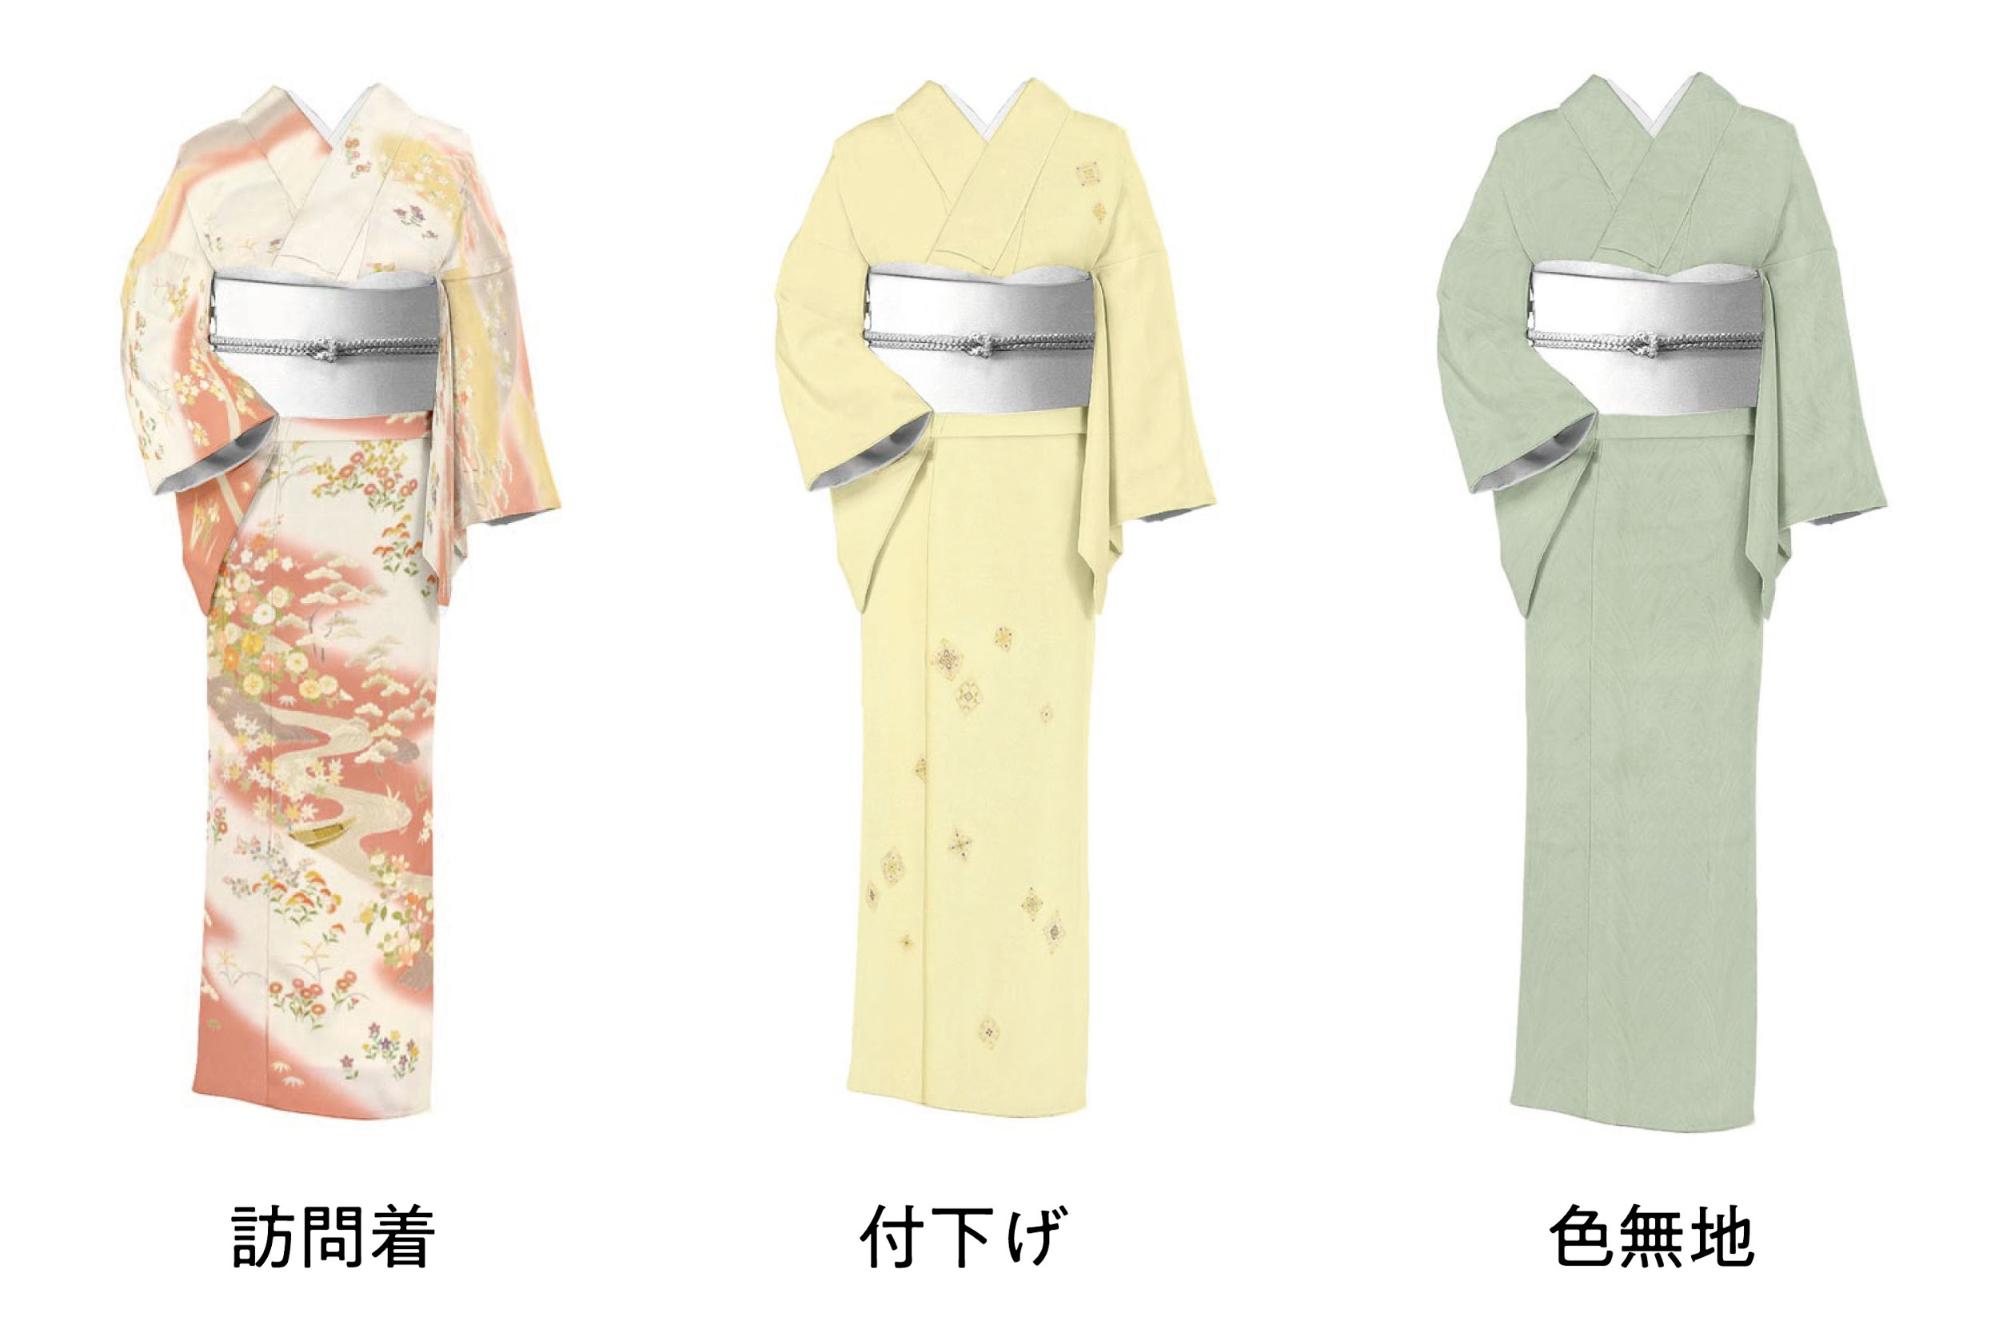 松田聖子プロデュース着物 正絹 (付け下げ.訪問着)と帯のセット - 着物